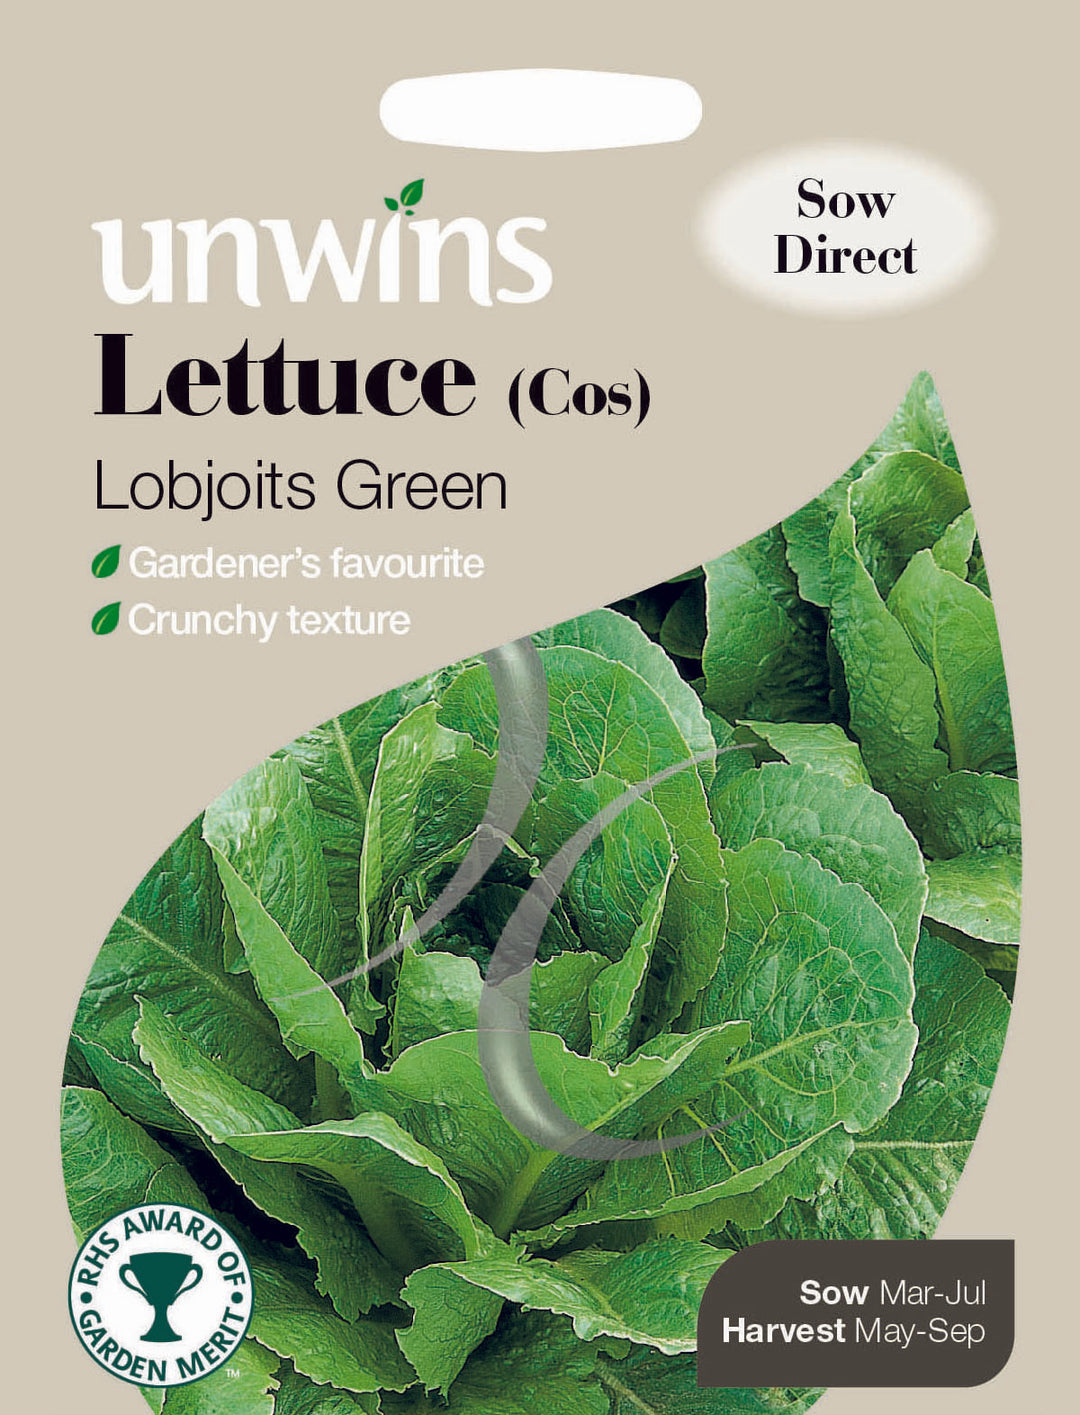 Lettuce (Cos) Lobjoits Green